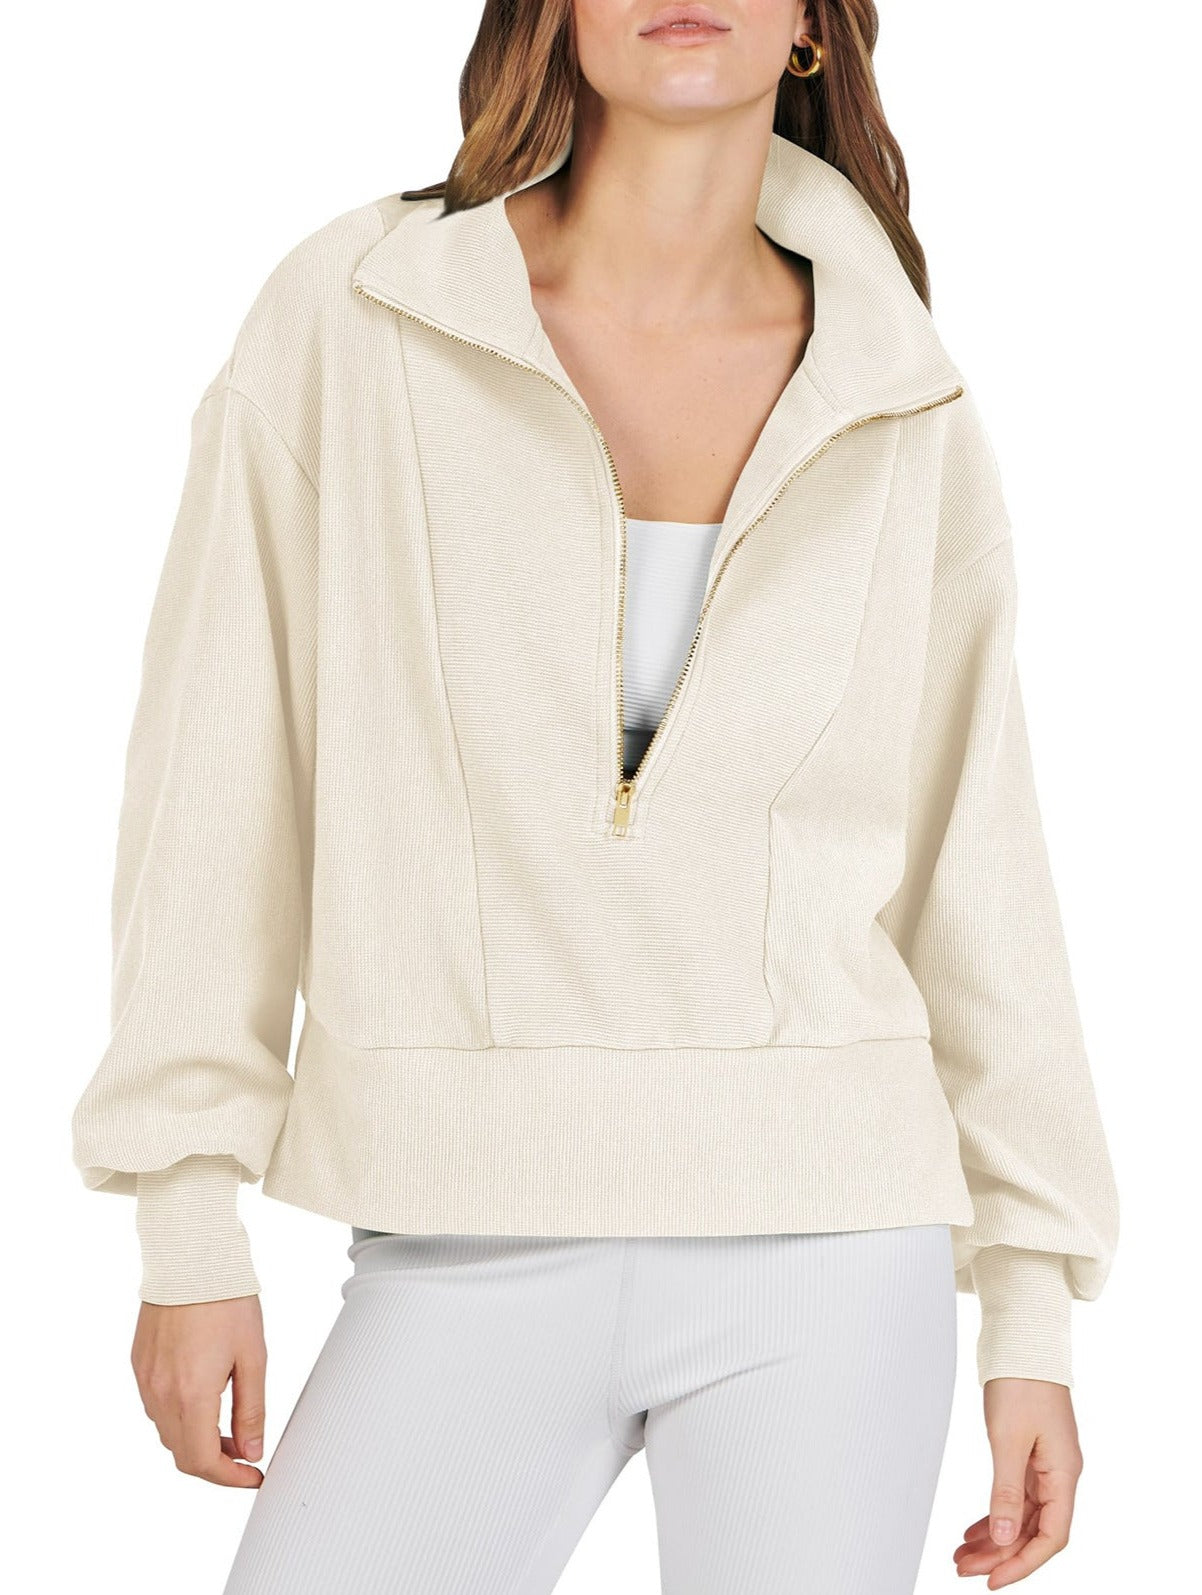 NTG Fad TOP beige / S Half Zip Pullover Long Sleeve Sweatshirt